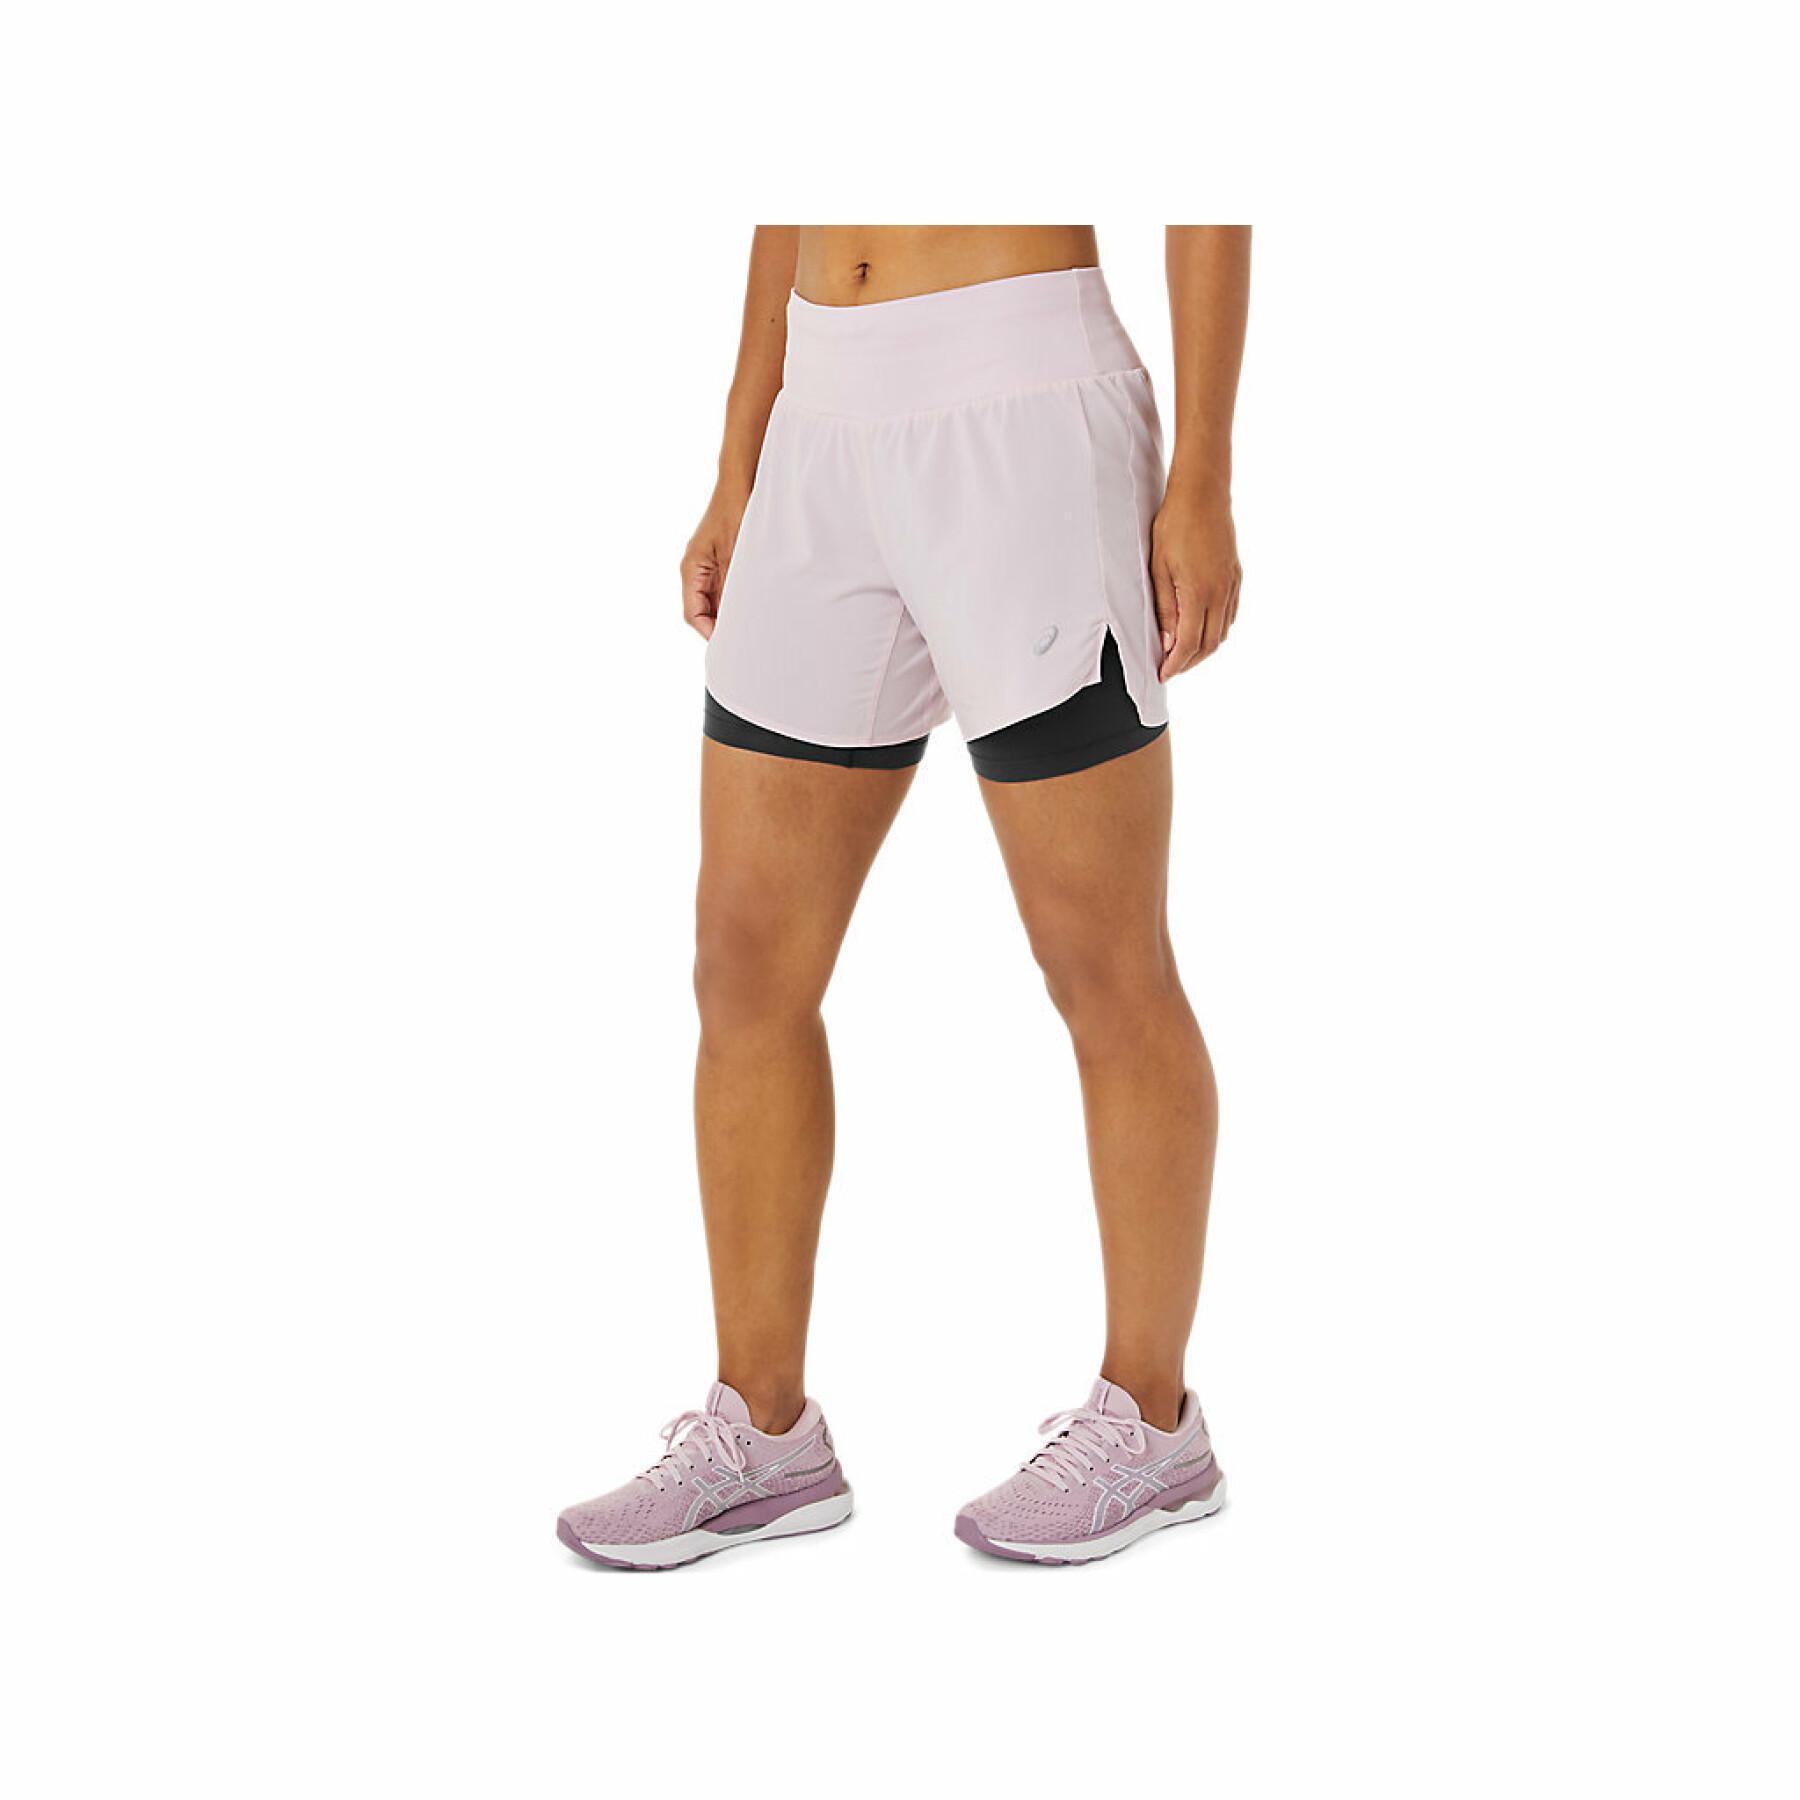 Pantalones cortos de mujer Asics Road 2-N-1 5.5in